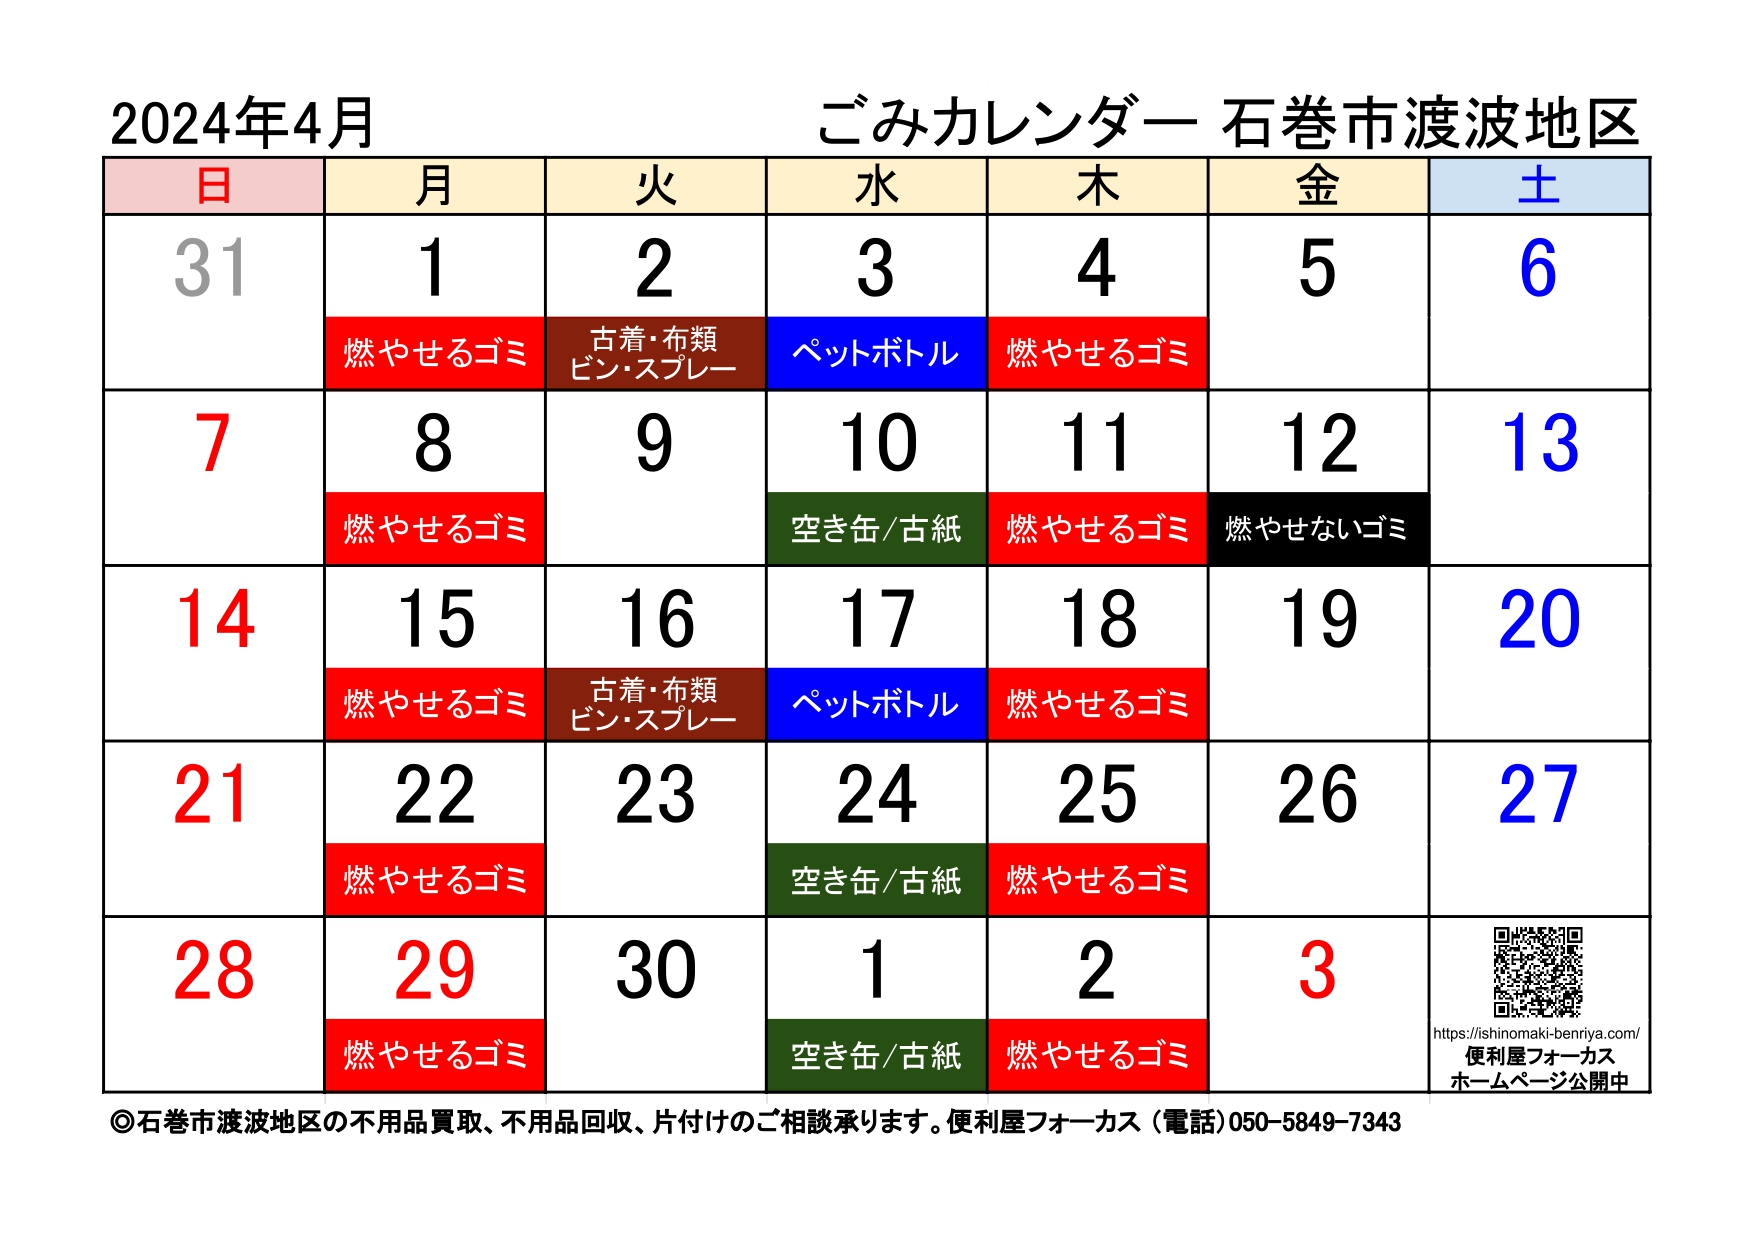 石巻市渡波地区ゴミ収集カレンダー2024年04月版（令和６年04月版）A4横サイズ